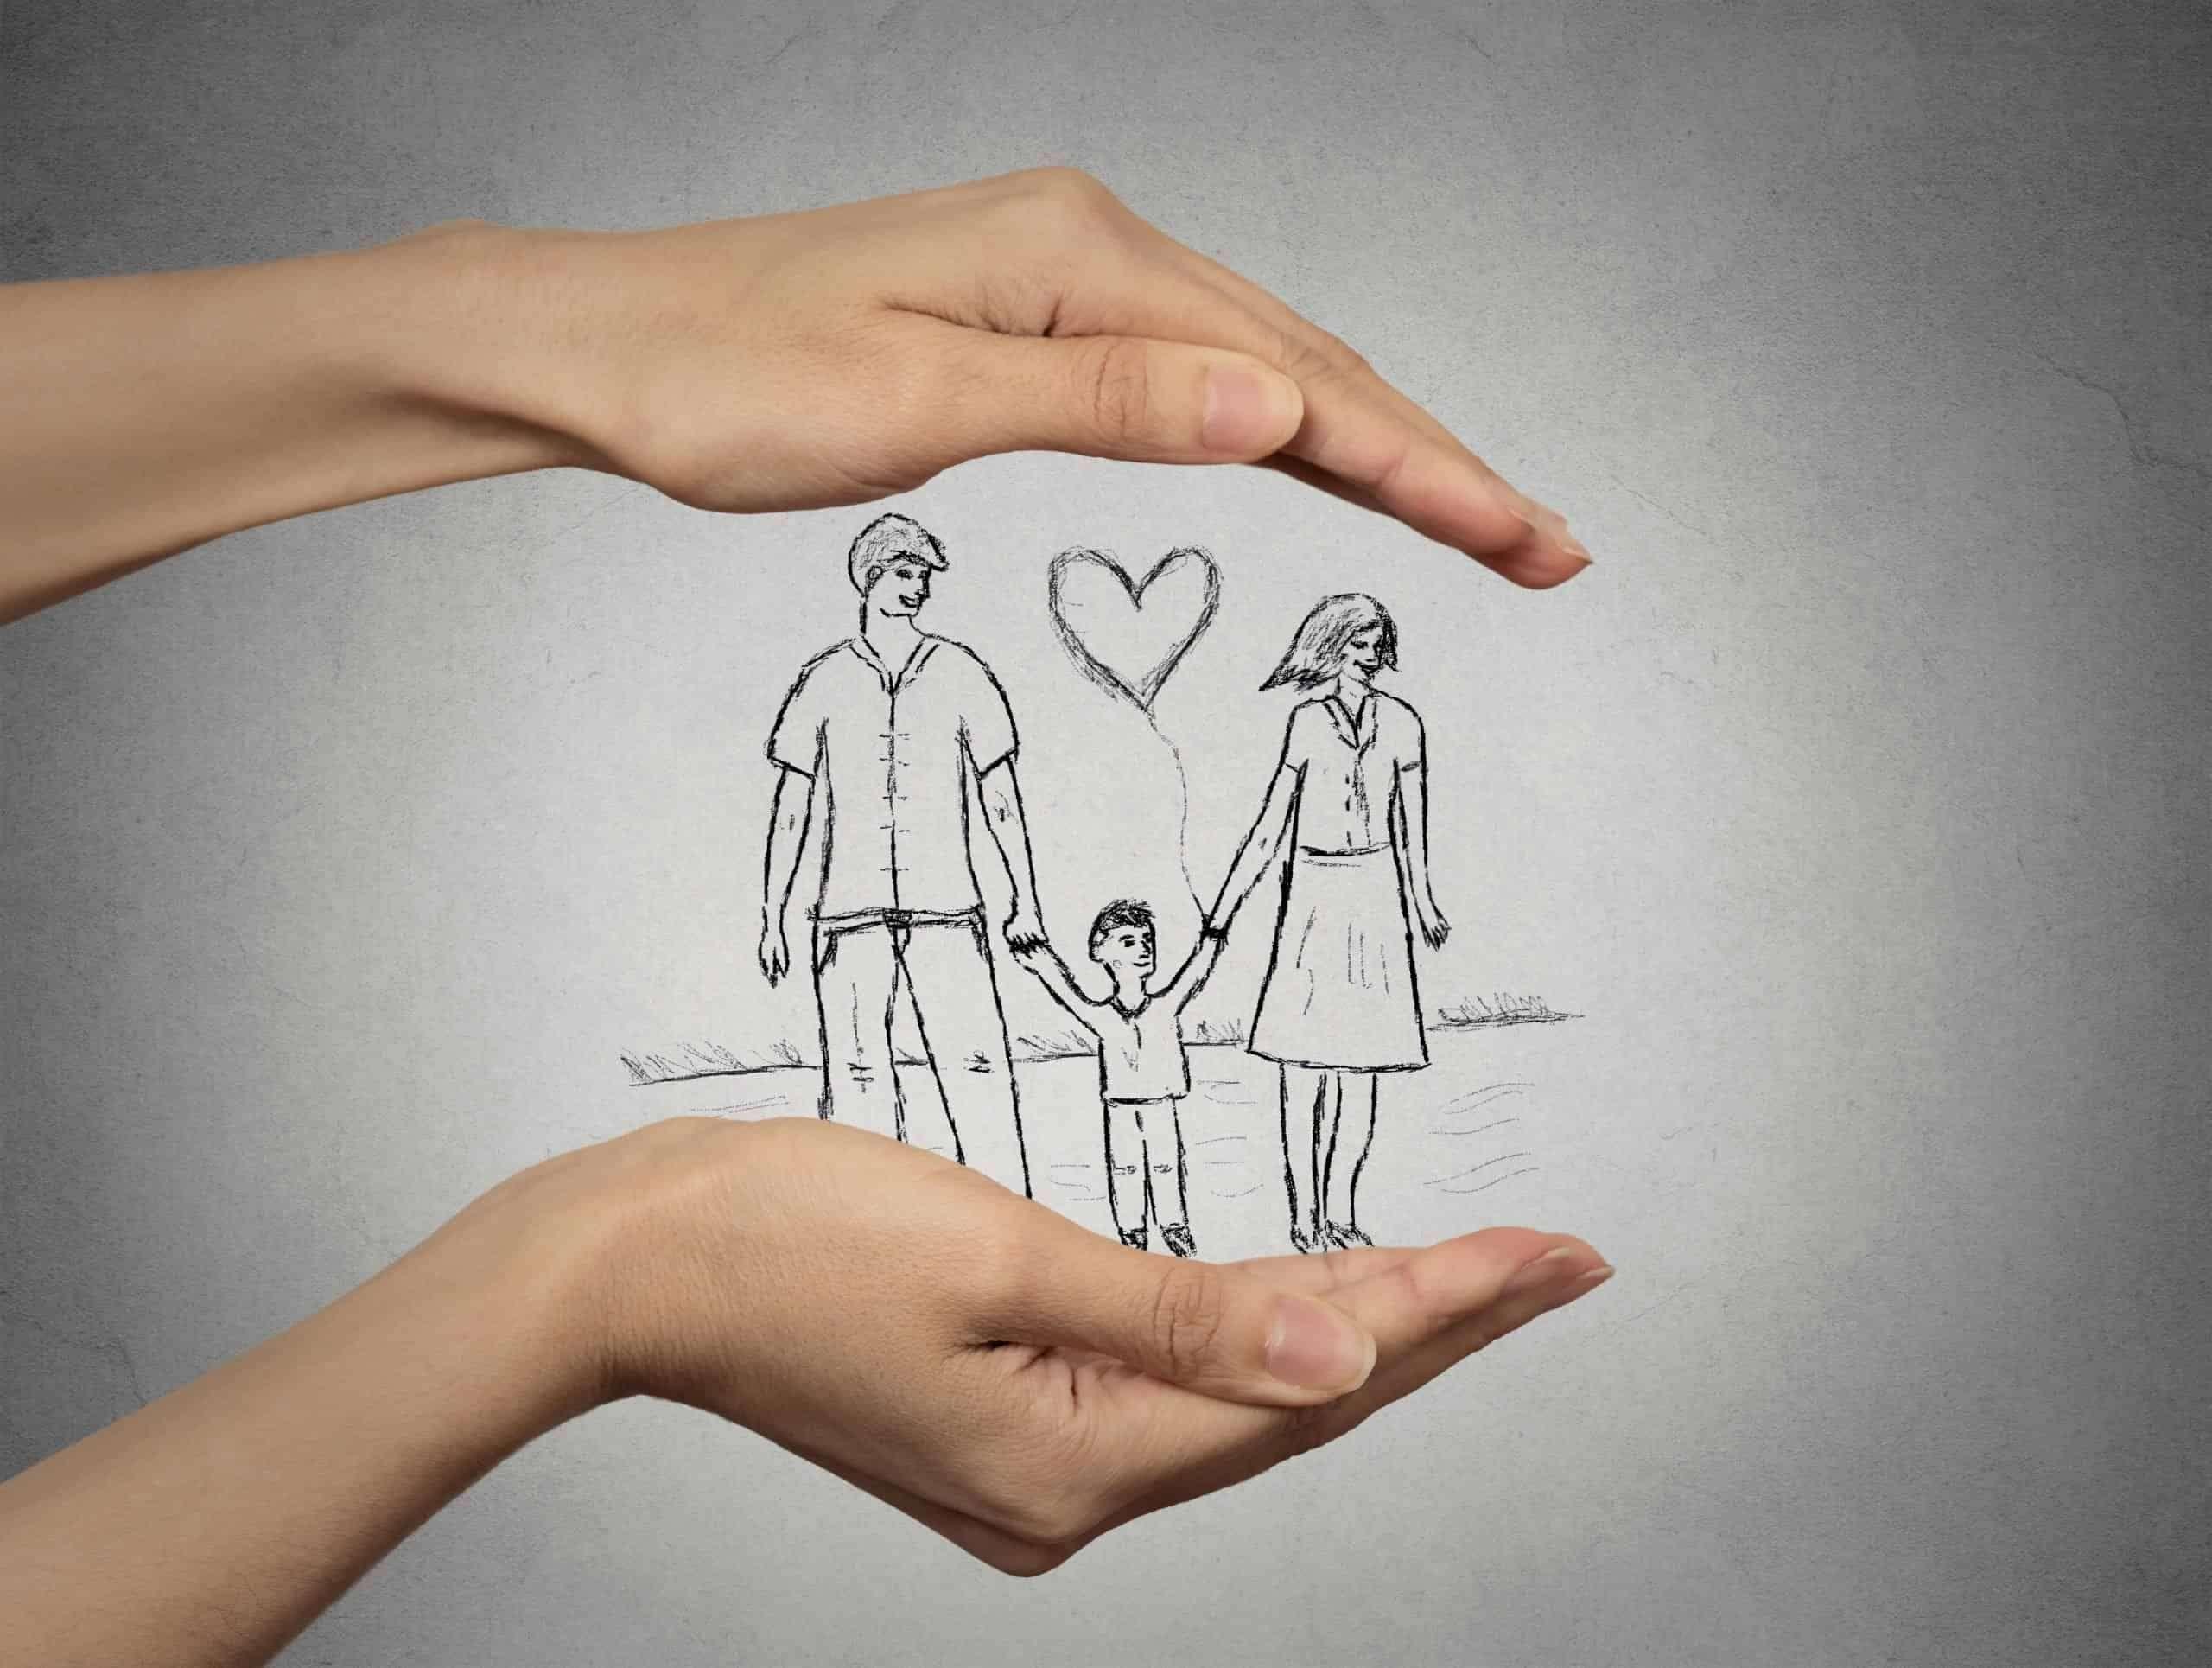 Примирение родителей. Семья рисунок. Любовь и взаимопонимание в семье. Отношения рисунок. Счастье в семье руки.